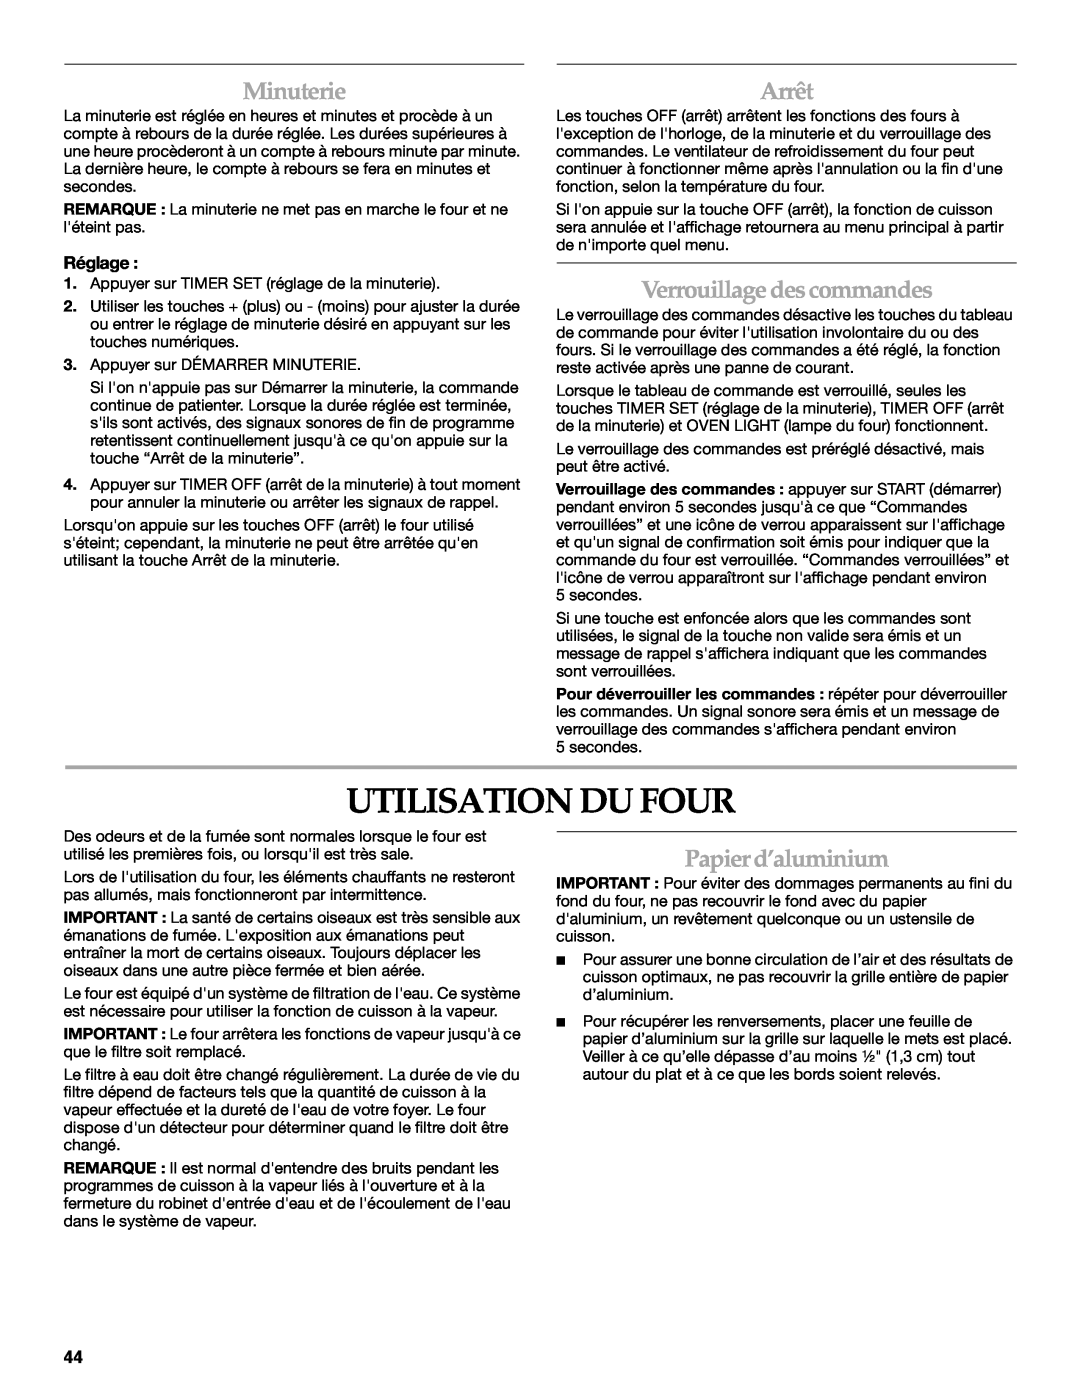 KitchenAid KEHU309 manual Utilisation Du Four, Minuterie, Verrouillagedescommandes, Papierd’aluminium, Arrêt, Réglage 